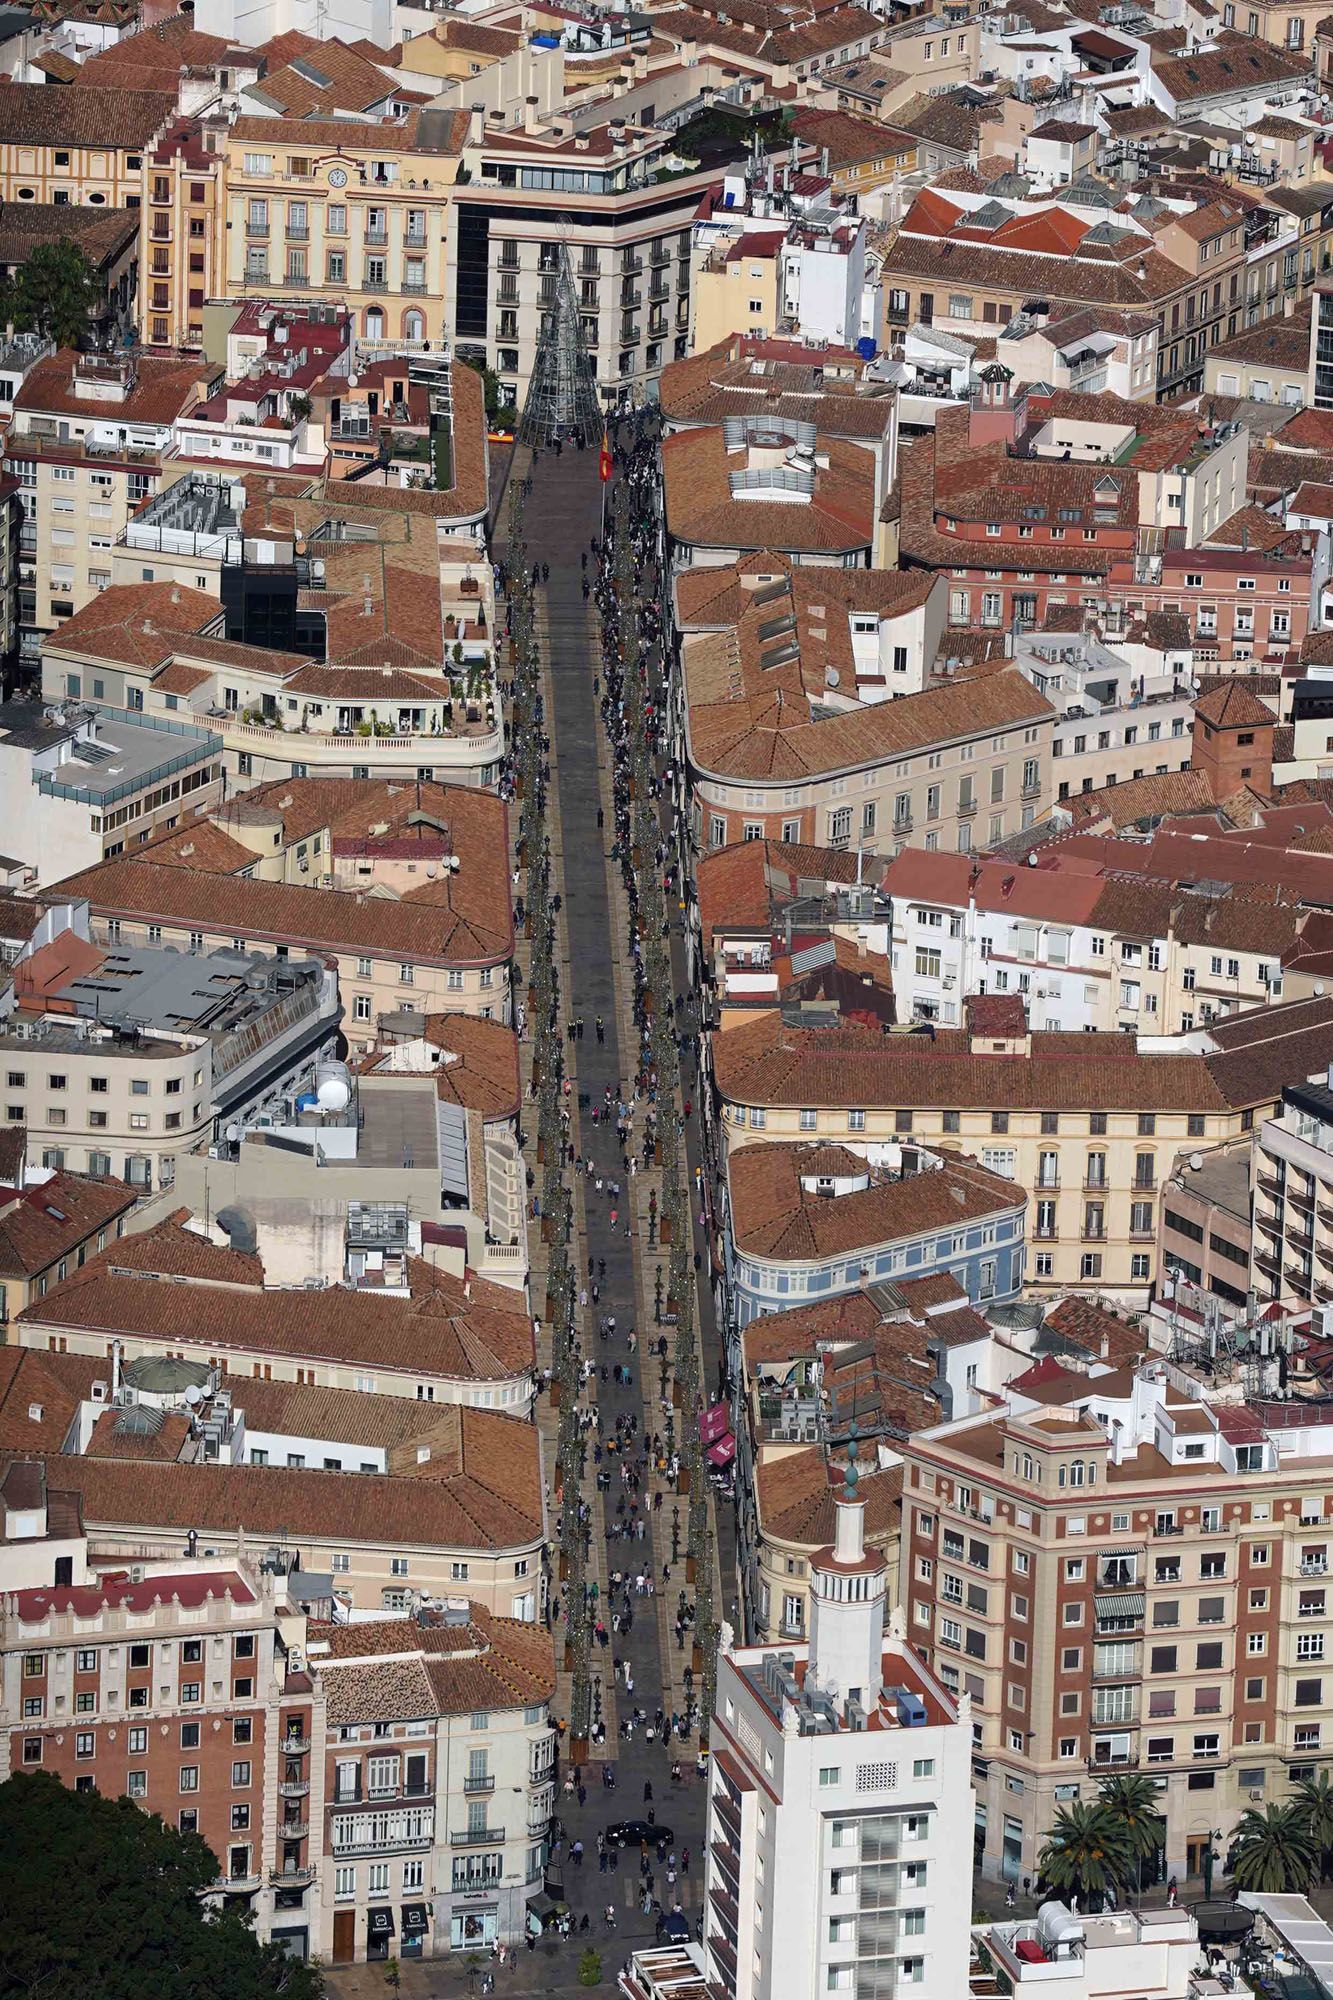 Vuelo de un helicóptero de la Guardia Civil sobrevolando Málaga durante el acto del Día del Veterano.